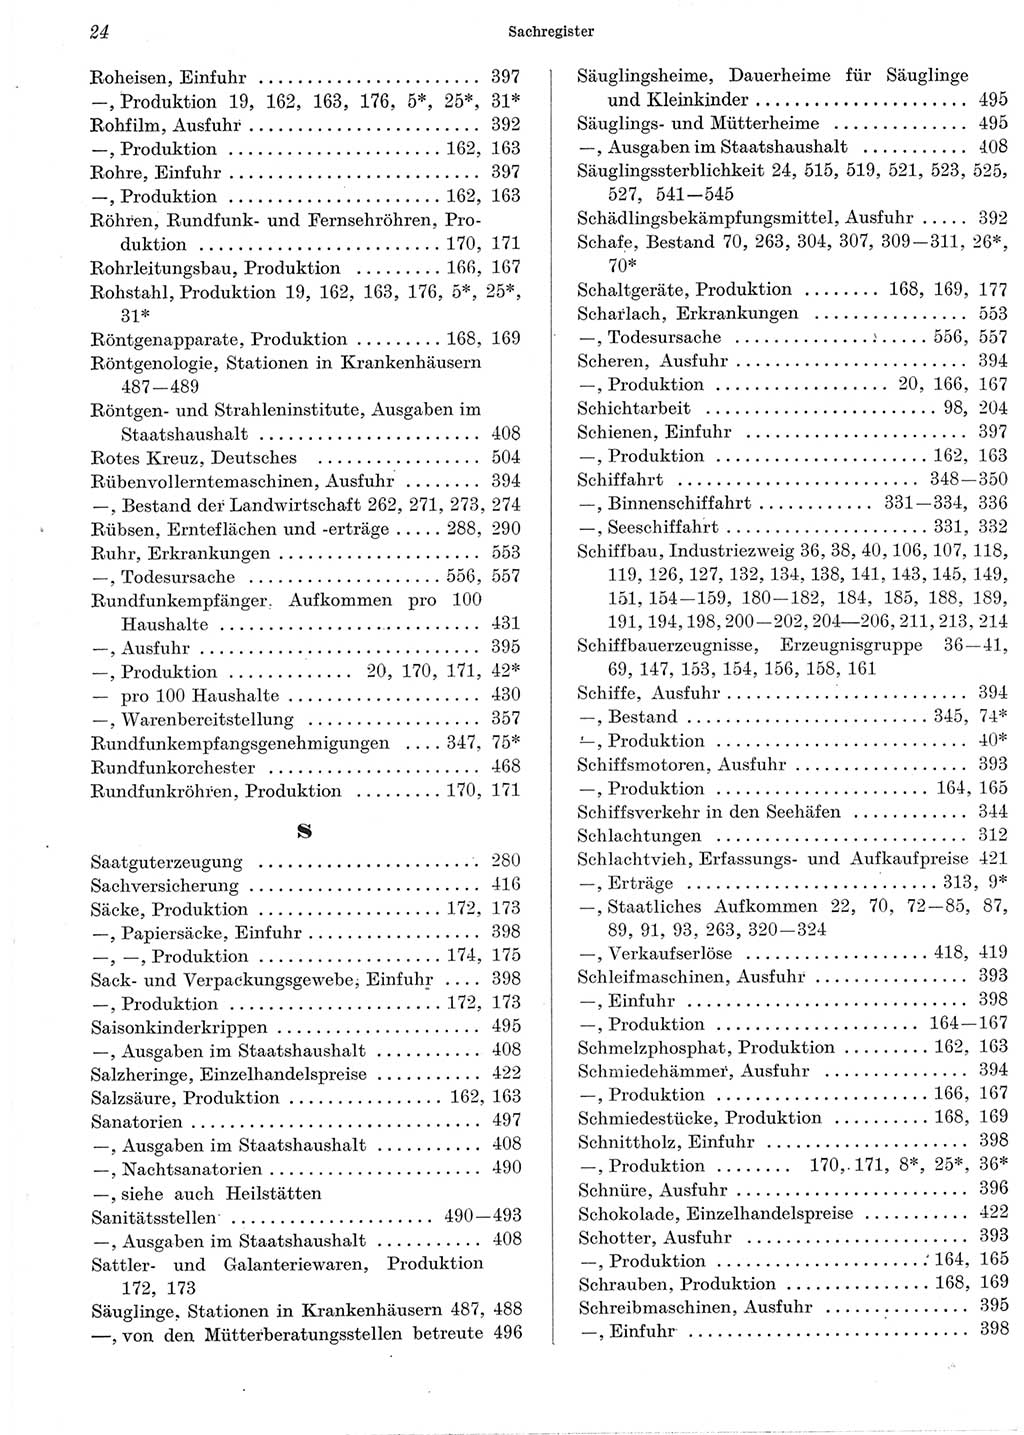 Statistisches Jahrbuch der Deutschen Demokratischen Republik (DDR) 1965, Seite 24 (Stat. Jb. DDR 1965, S. 24)